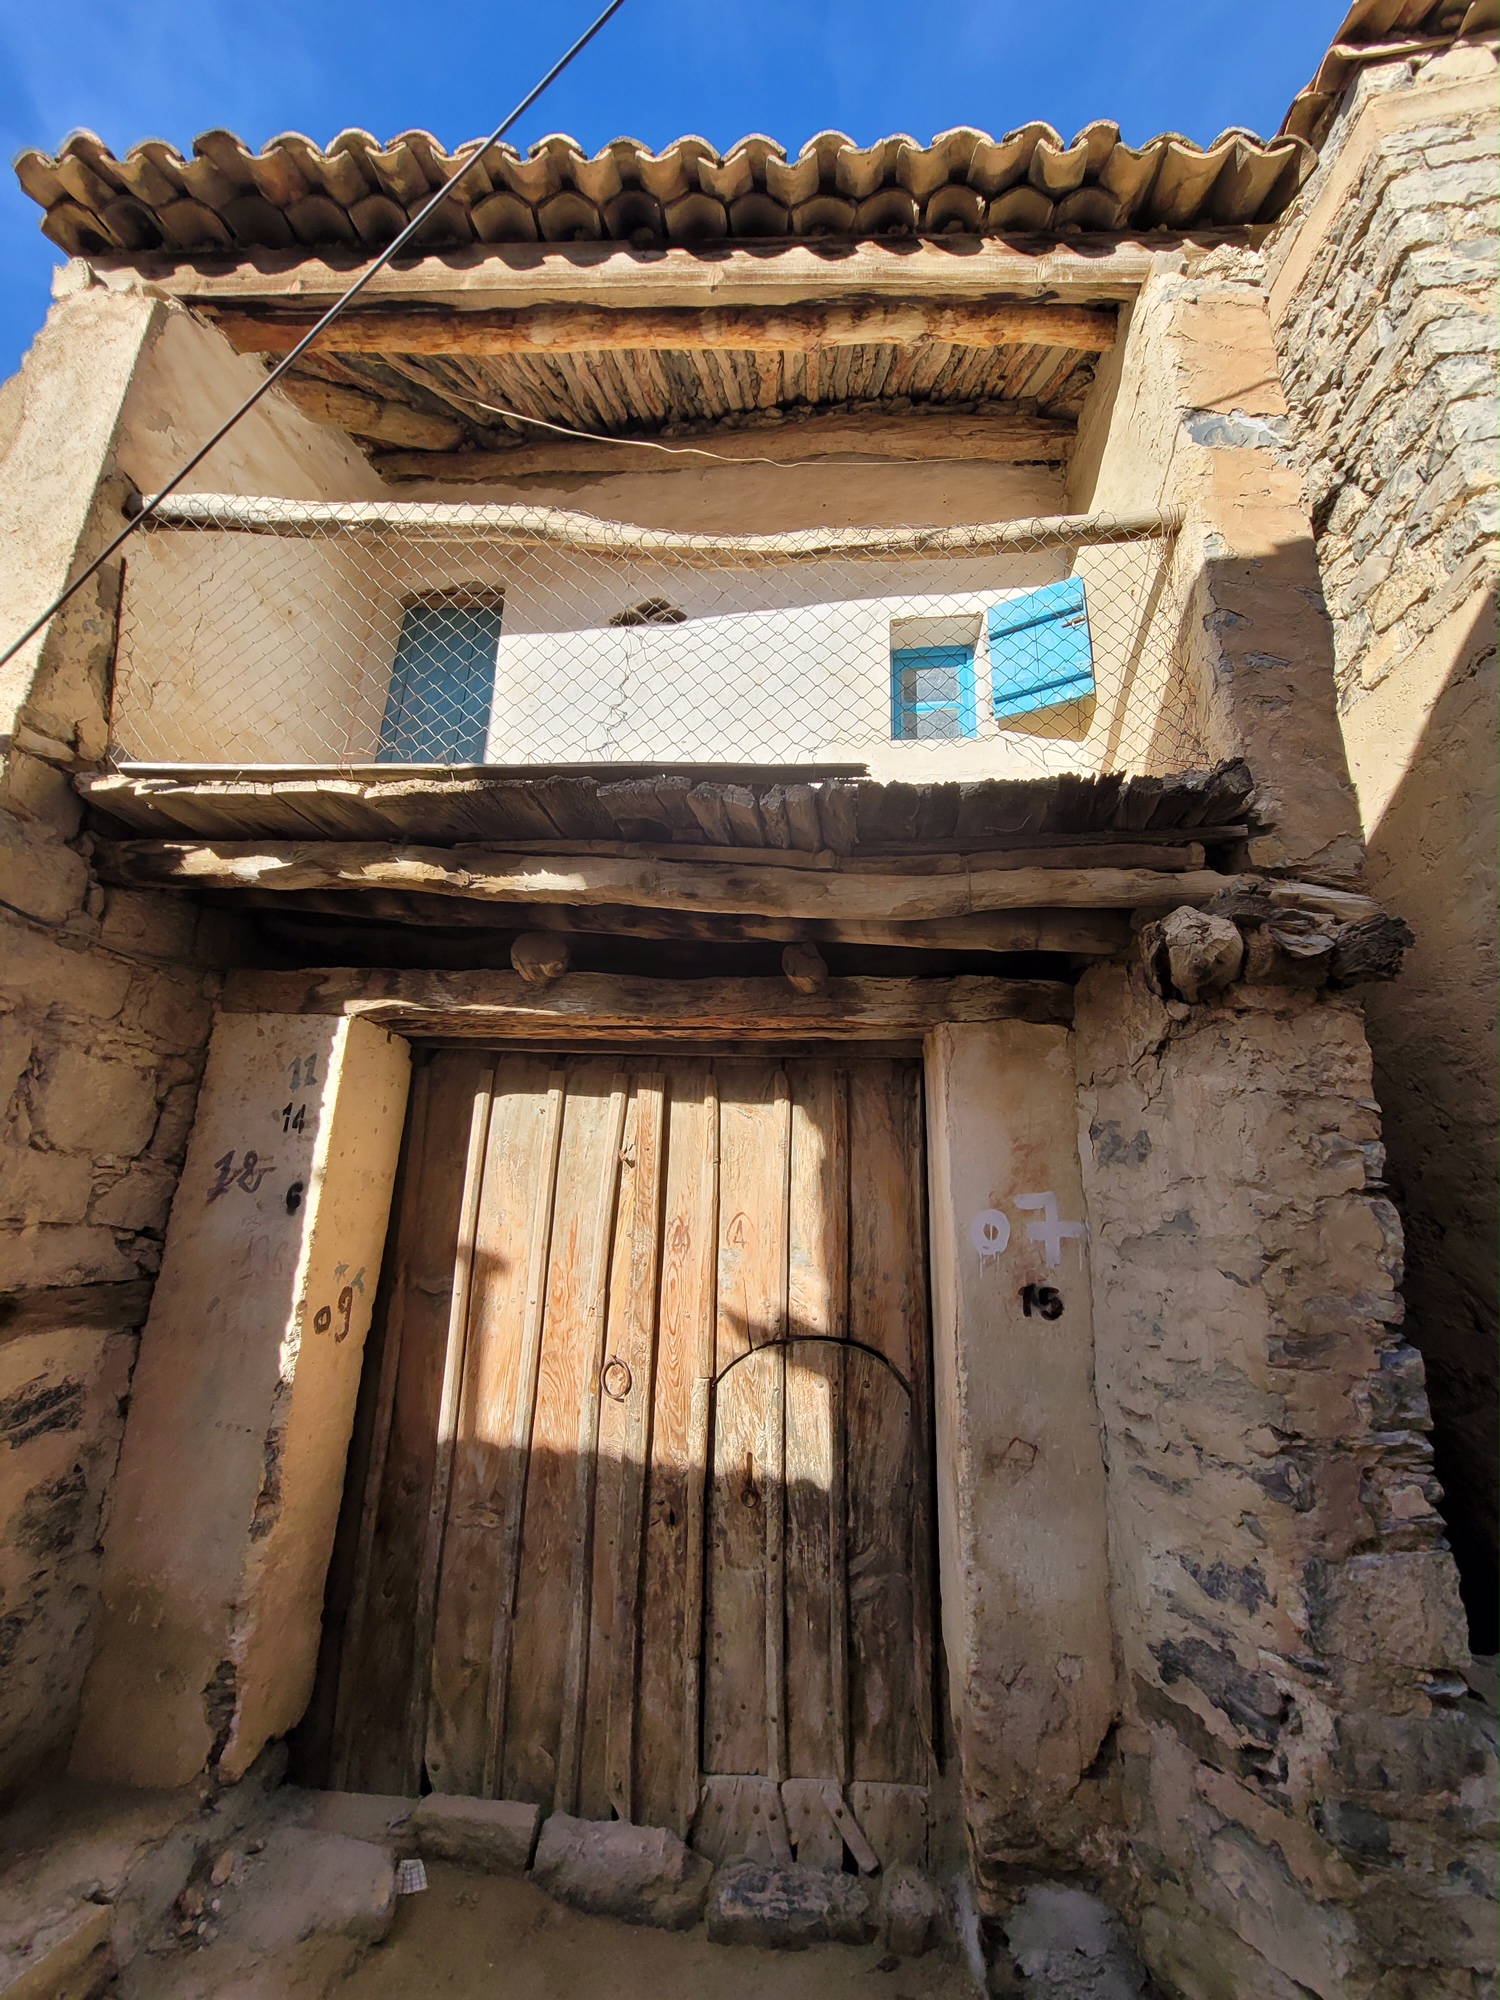 القليعة - قرية مخبأة بين جبال الجزائر